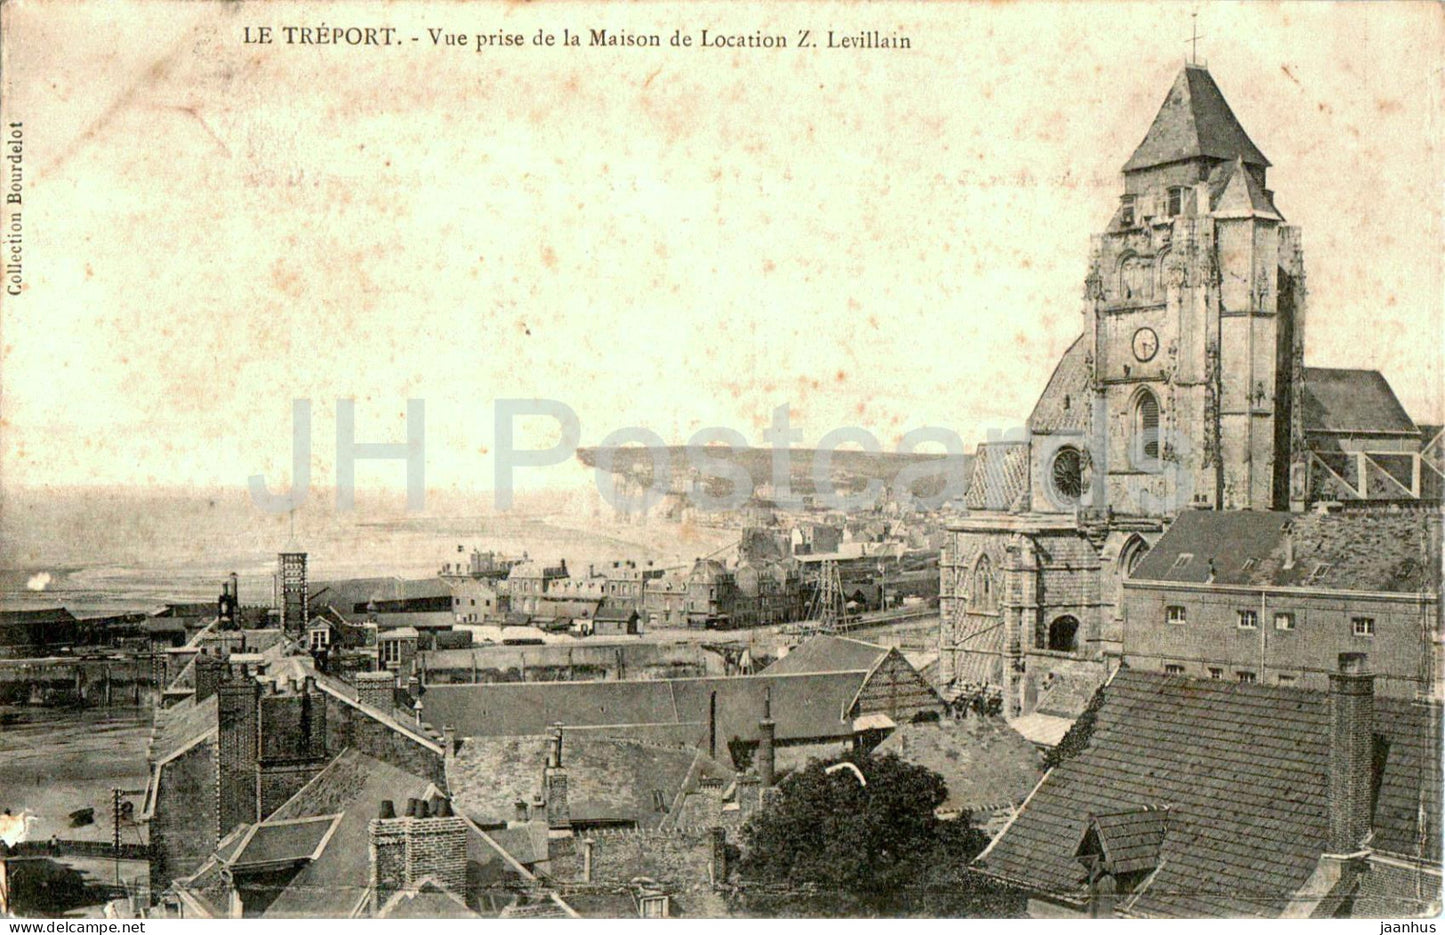 Le Treport - Vue prise de la Maison de Location Z. Levillain - old postcard - 1906 - France - used - JH Postcards